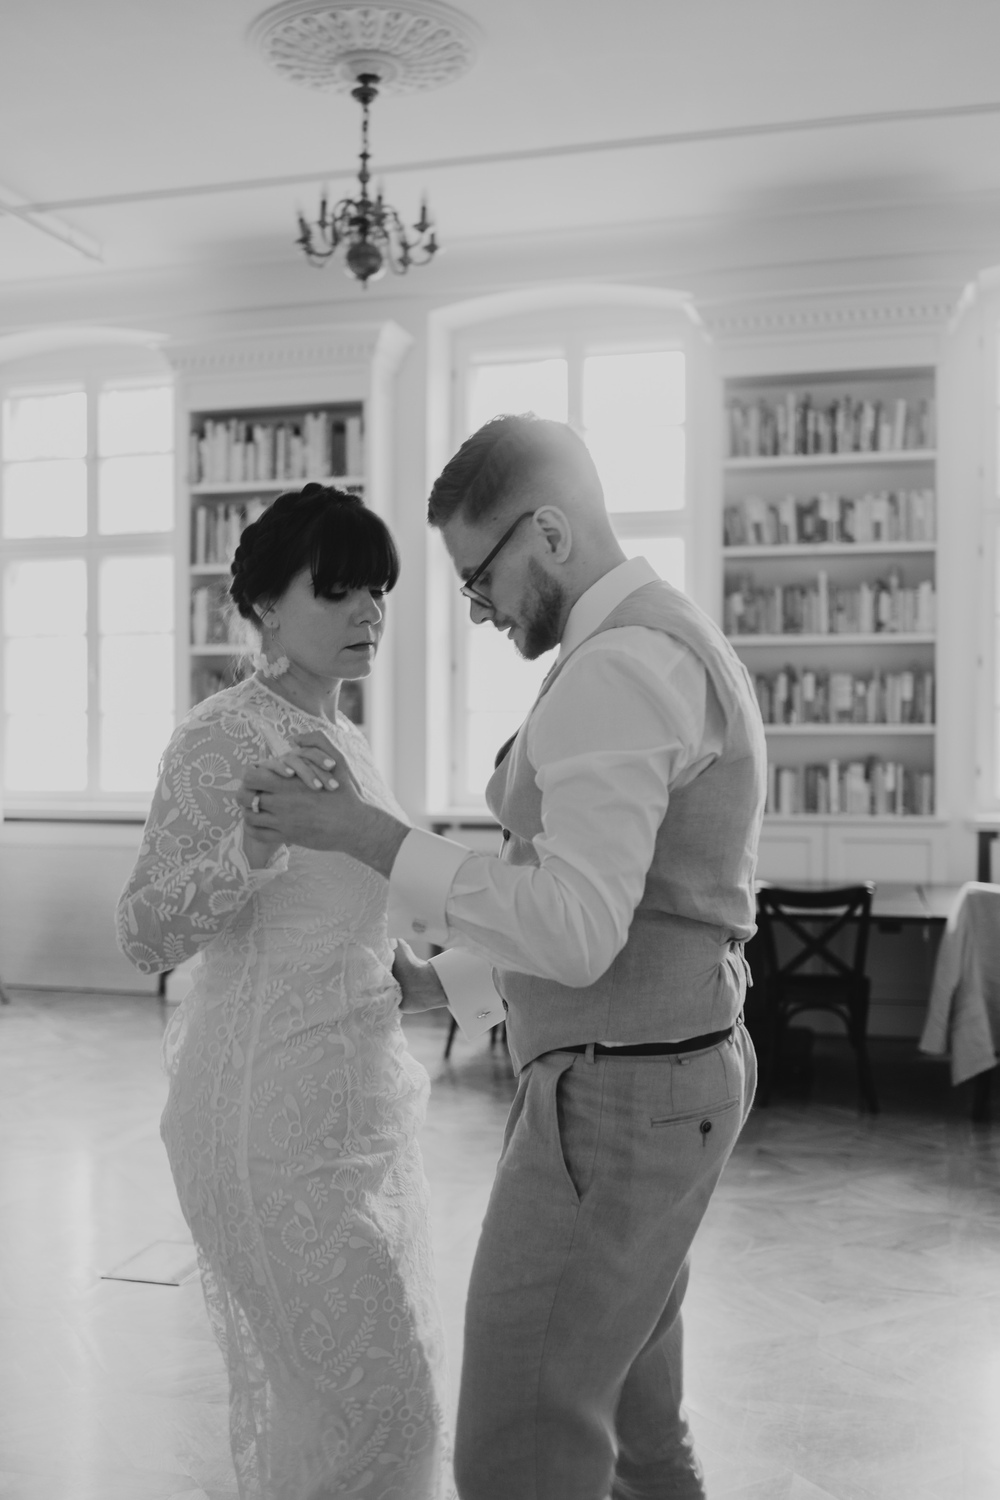 Emocjonujący dzień w Bibliotece Raczyńskich podczas ceremonii ślubu